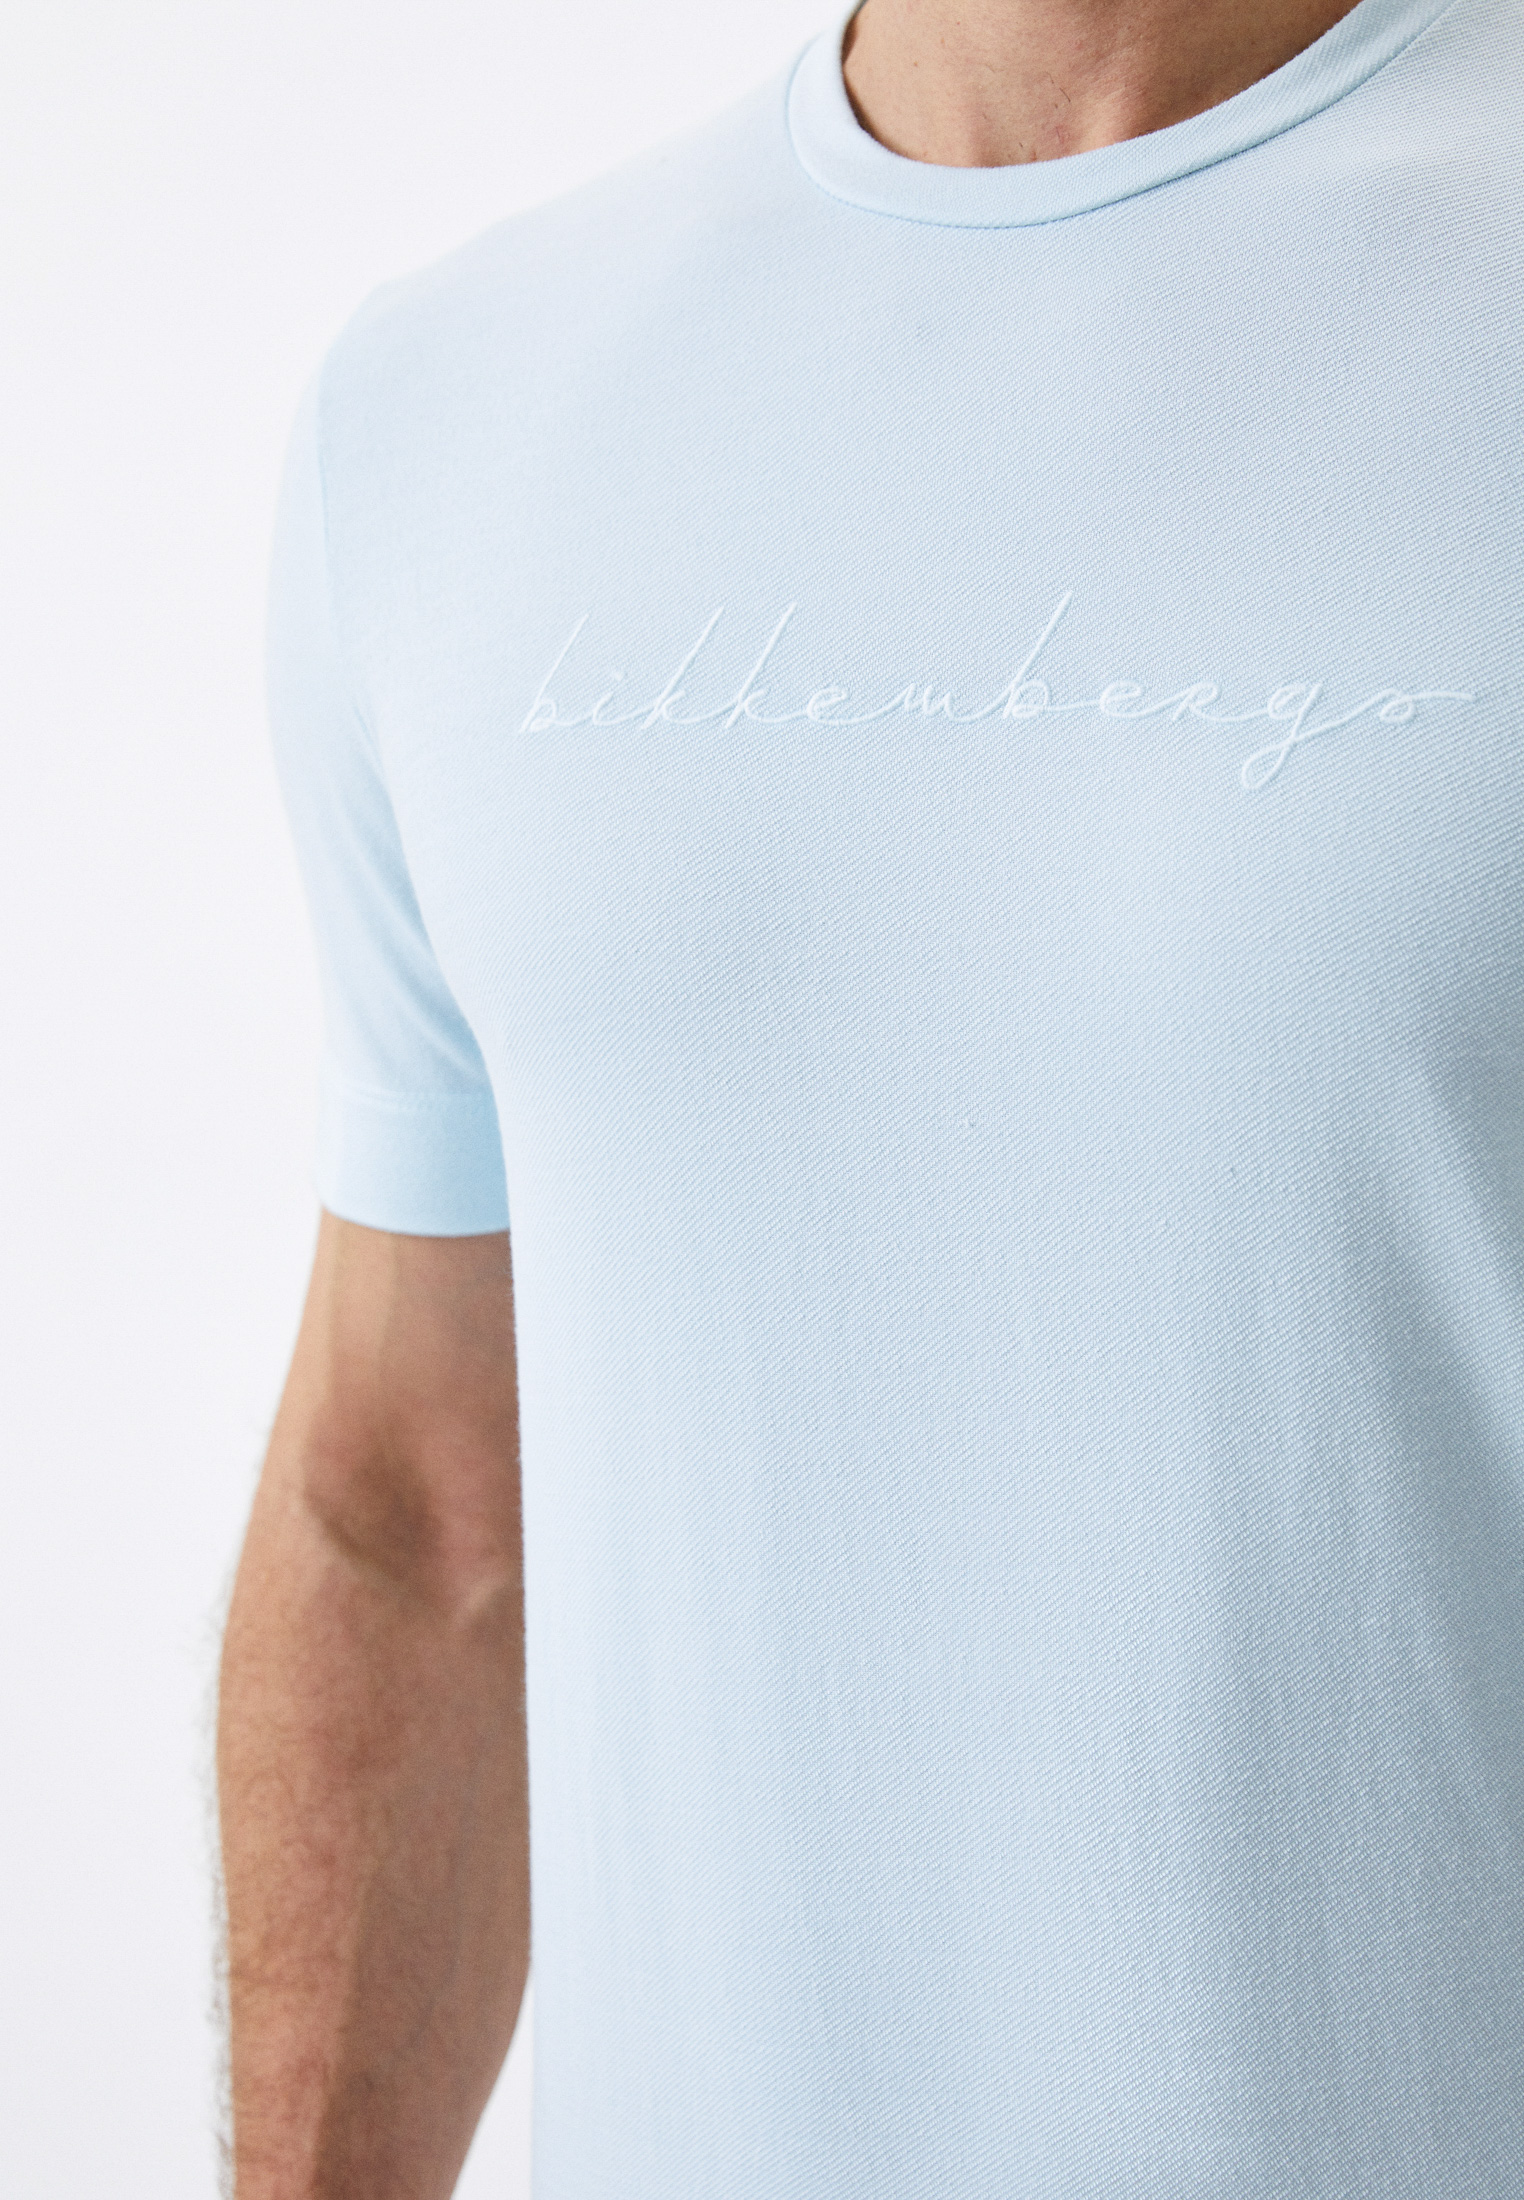 Мужская футболка Bikkembergs (Биккембергс) C 7 015 3M M 4174: изображение 4